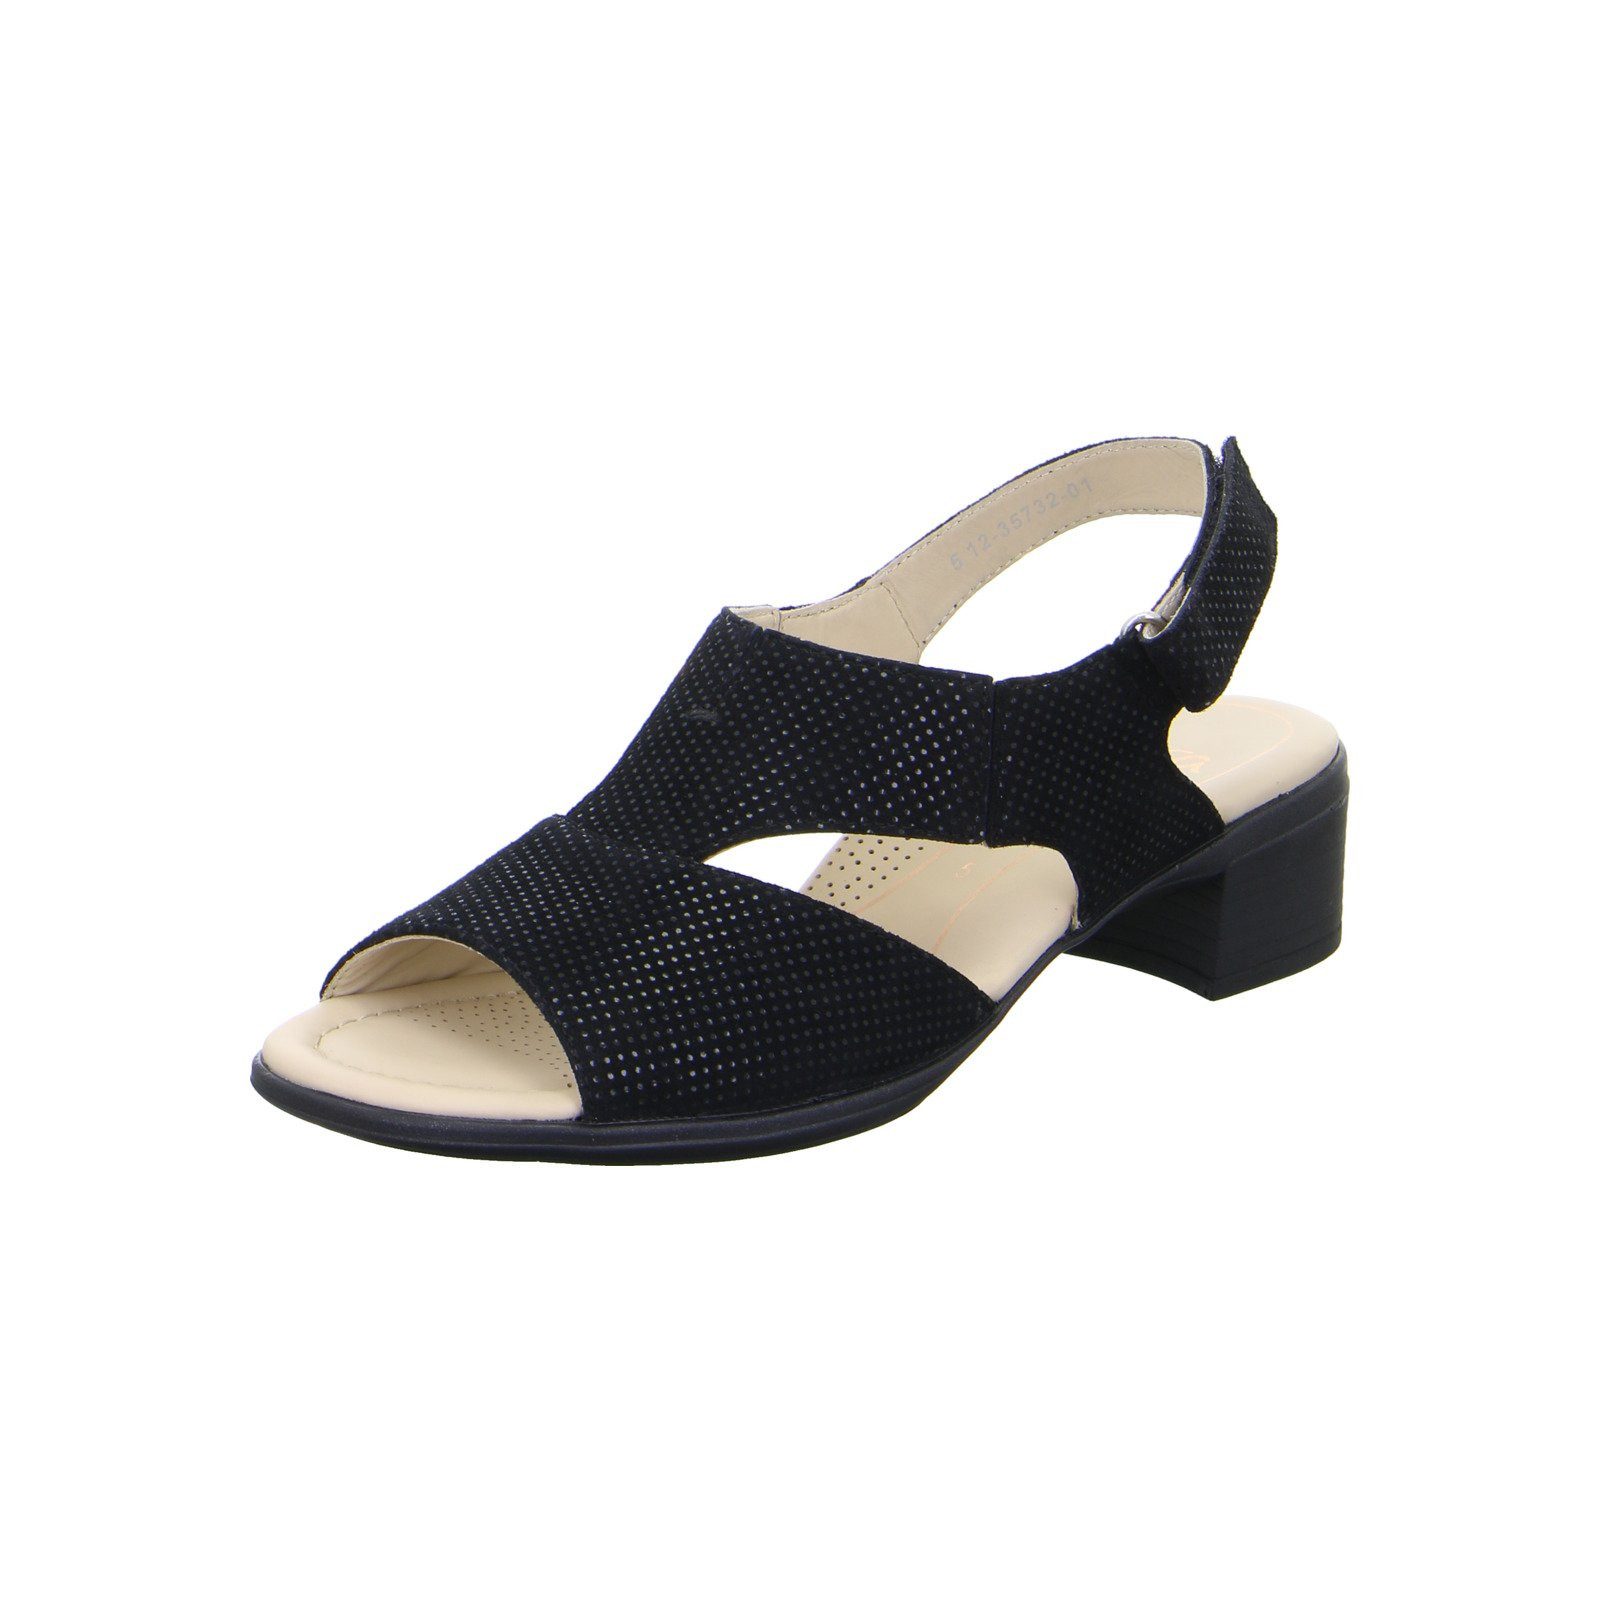 Ara Lugano - Damen Schuhe Sandalette schwarz